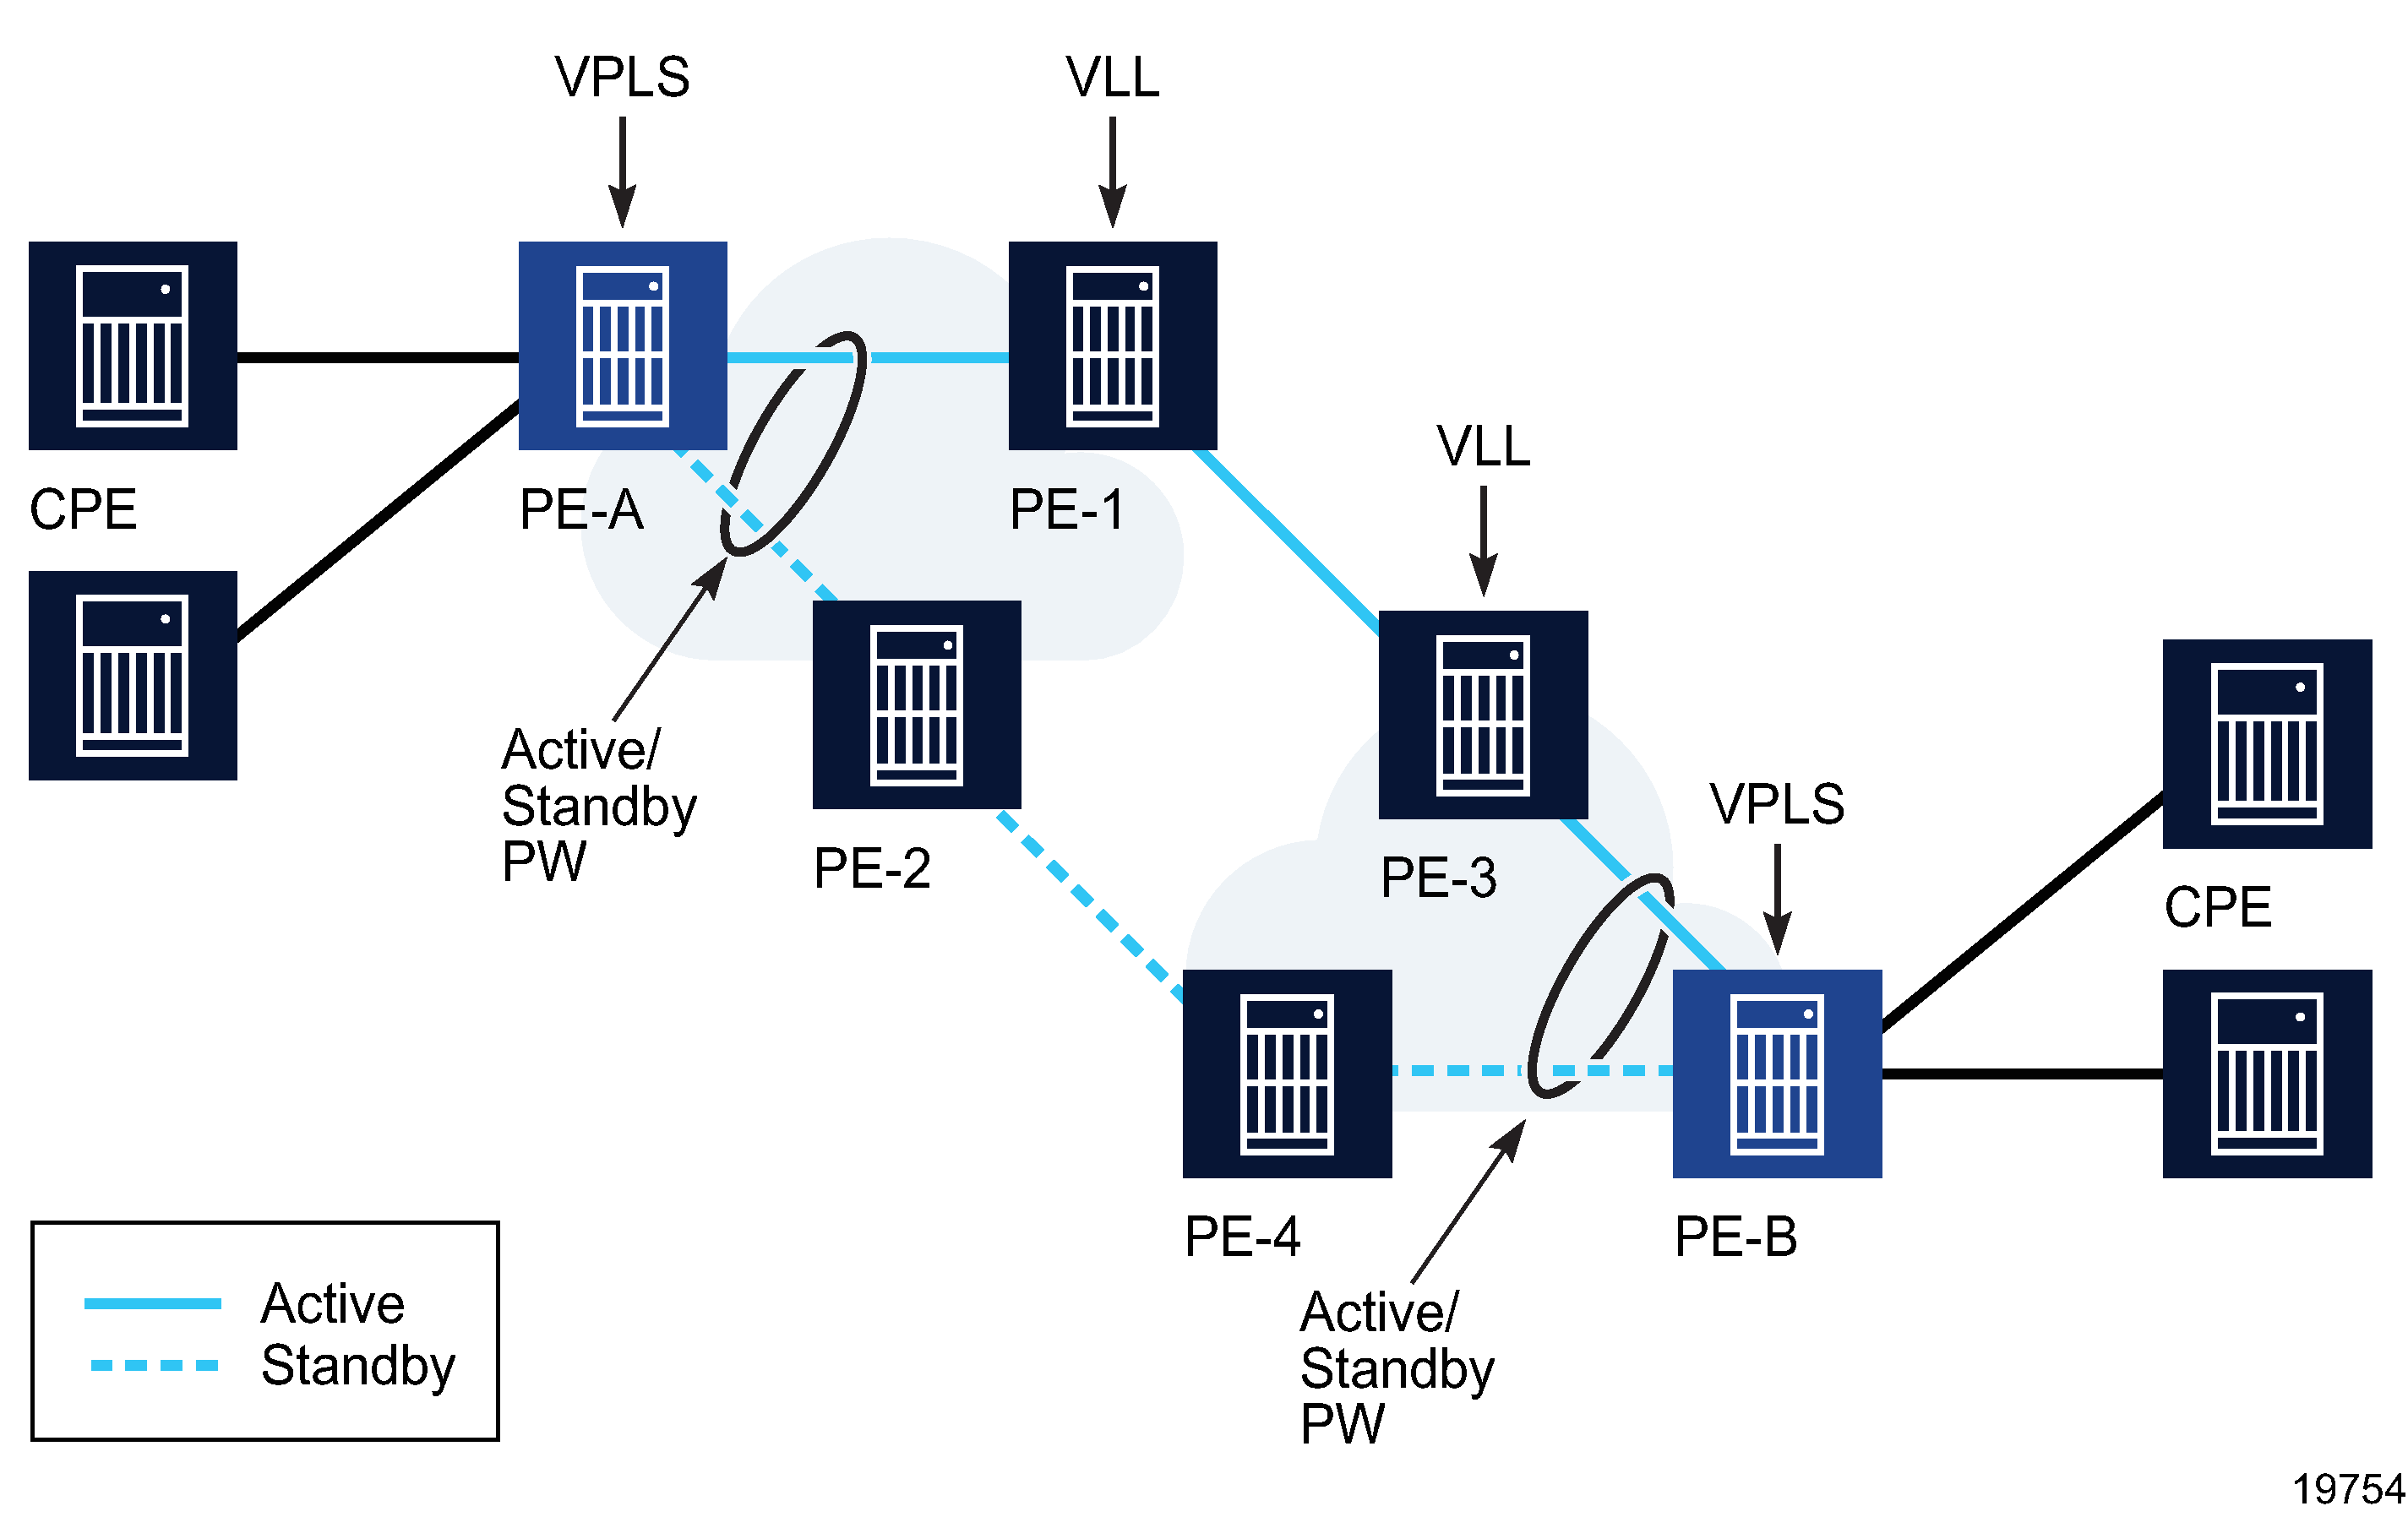 VPLS and VLL combination to provide E2E redundant path